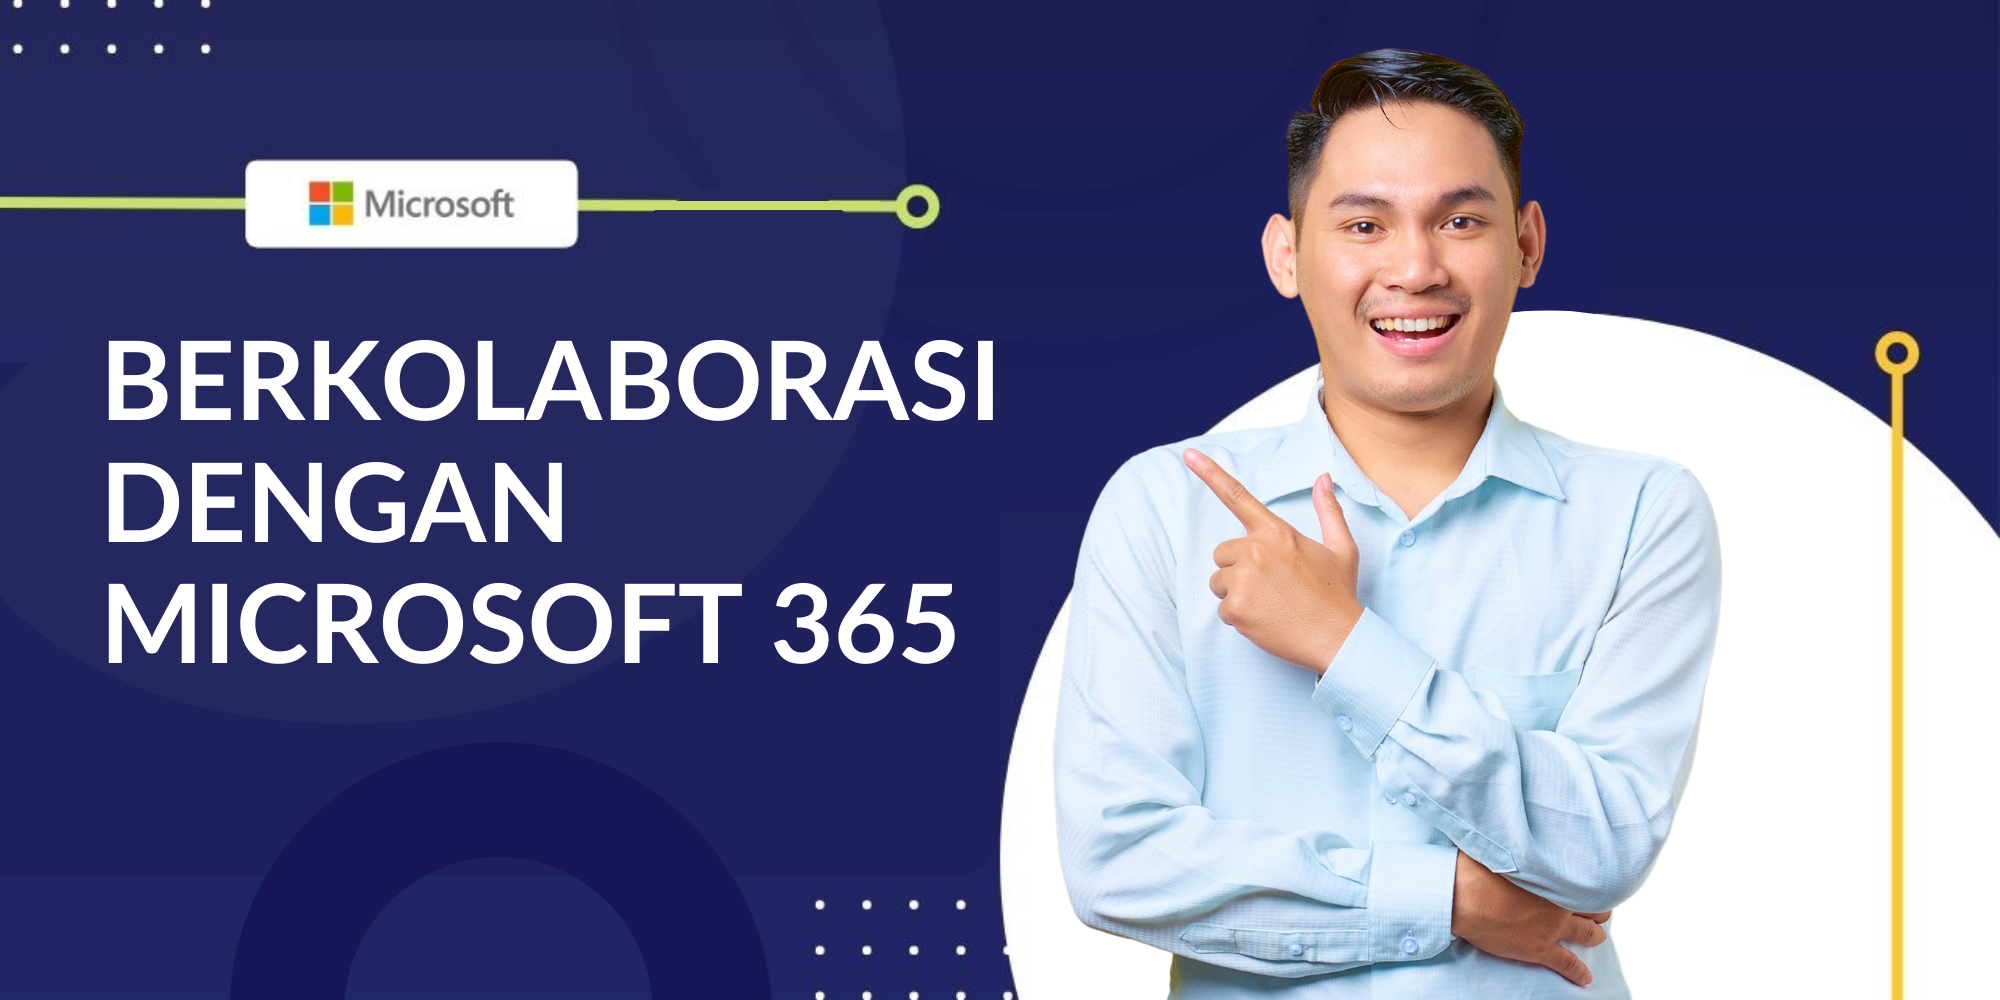 Berkolaborasi dengan Microsoft 365 